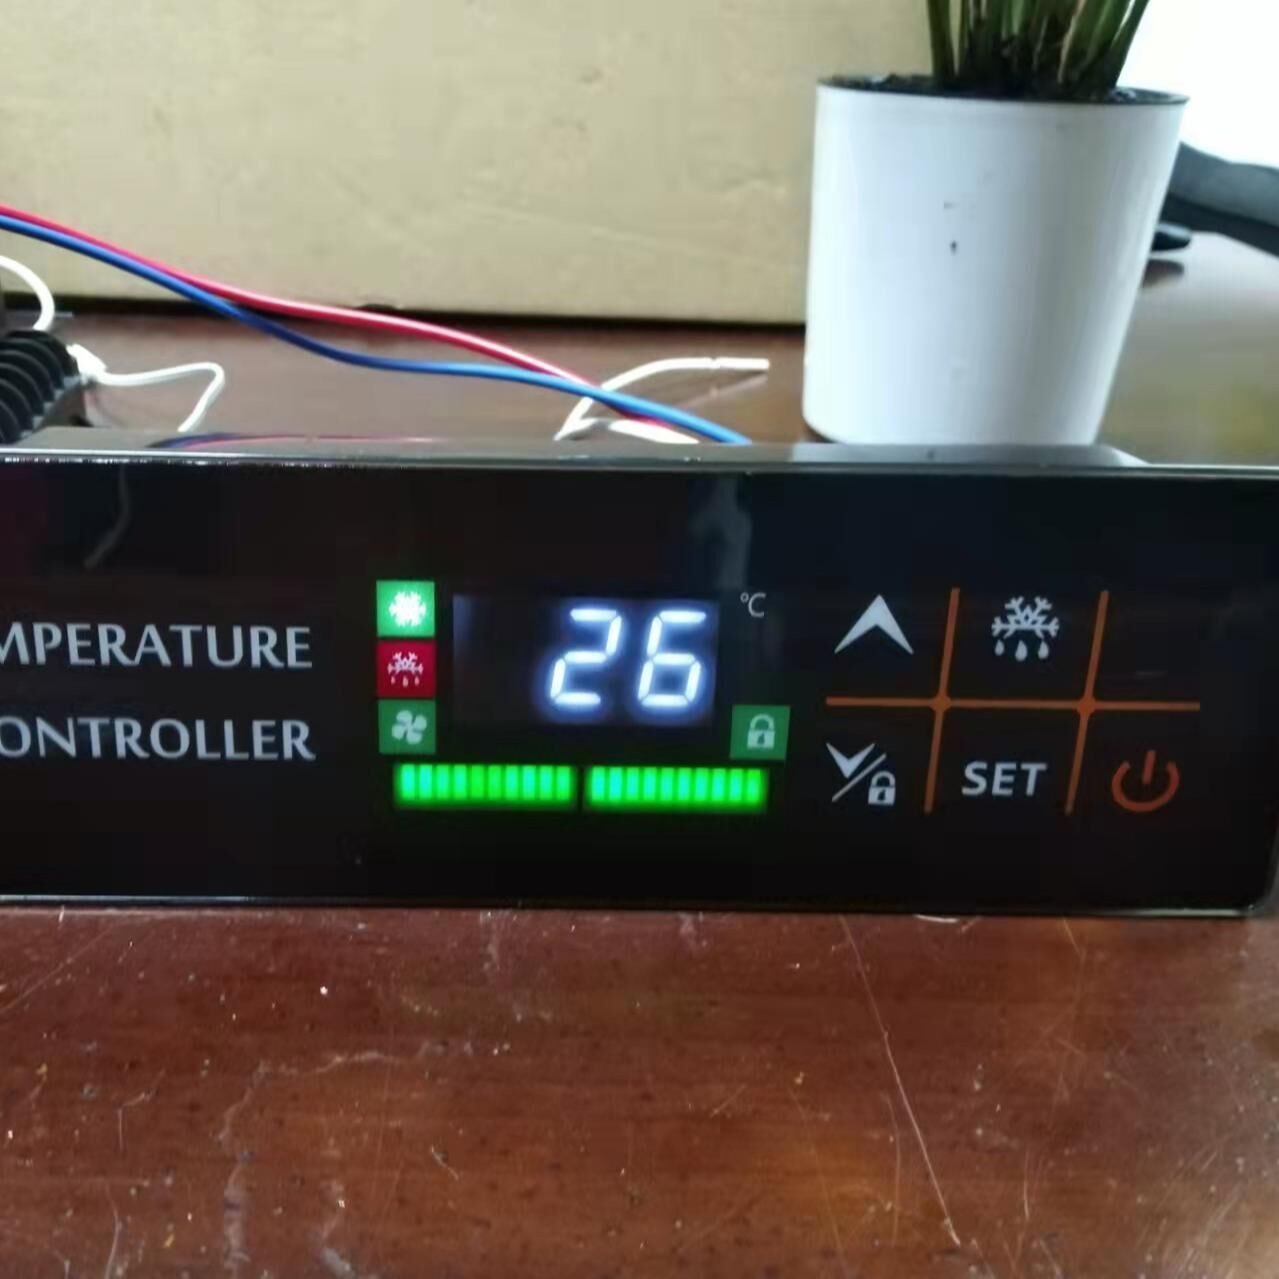 温度控制器  KR-704  特点：温度显示 温度控制 风机控制 化霜控制 超限报警 故障自诊断图片